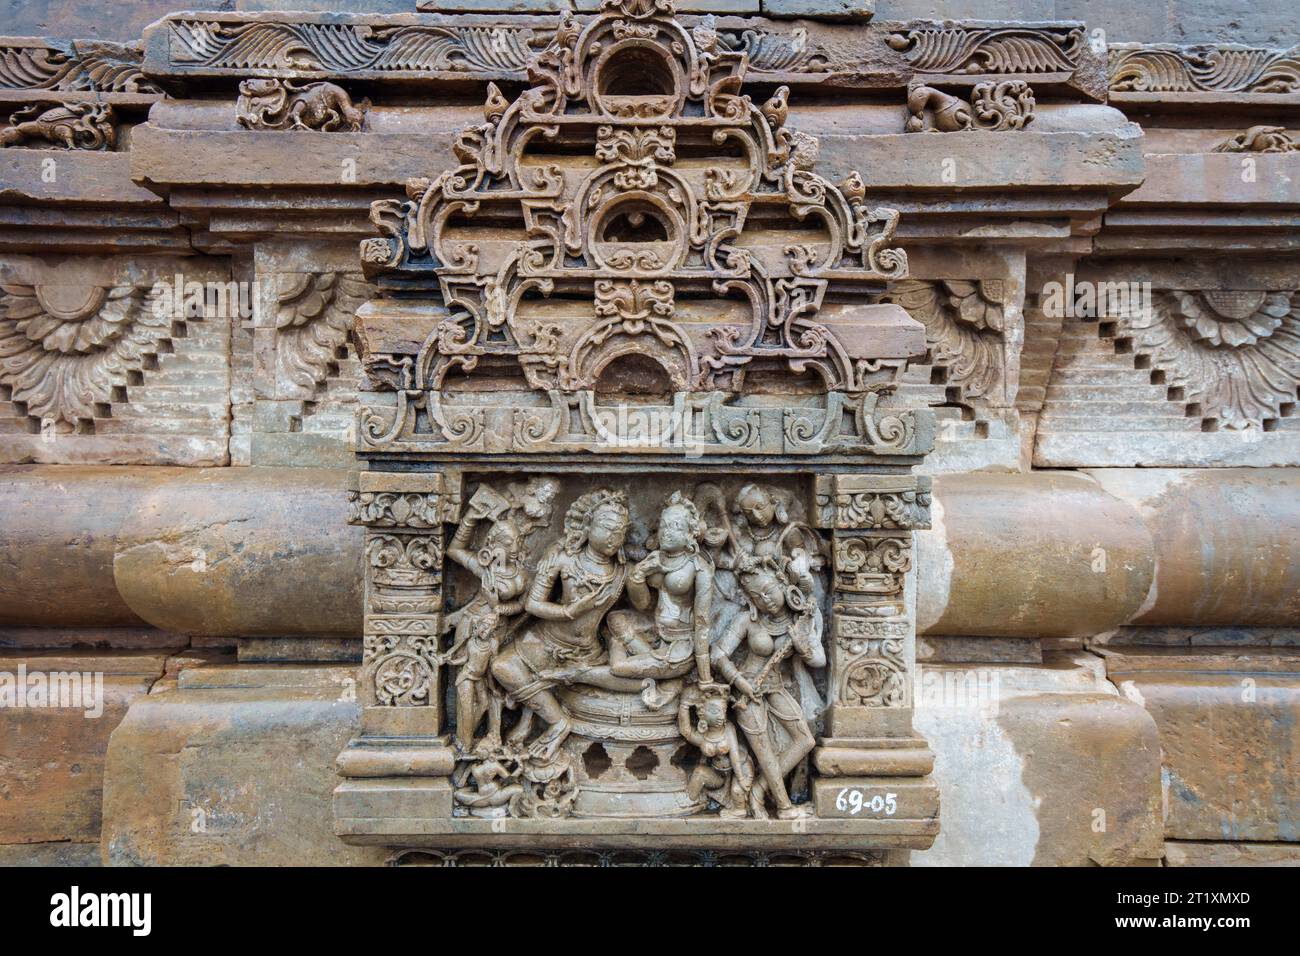 Neben dem Baori befindet sich der wunderschön gestaltete Harshat Mata Tempel. Chand Baori ist einer der größten Steppenhäuser der Welt. Rajasthan, Indien. Stockfoto